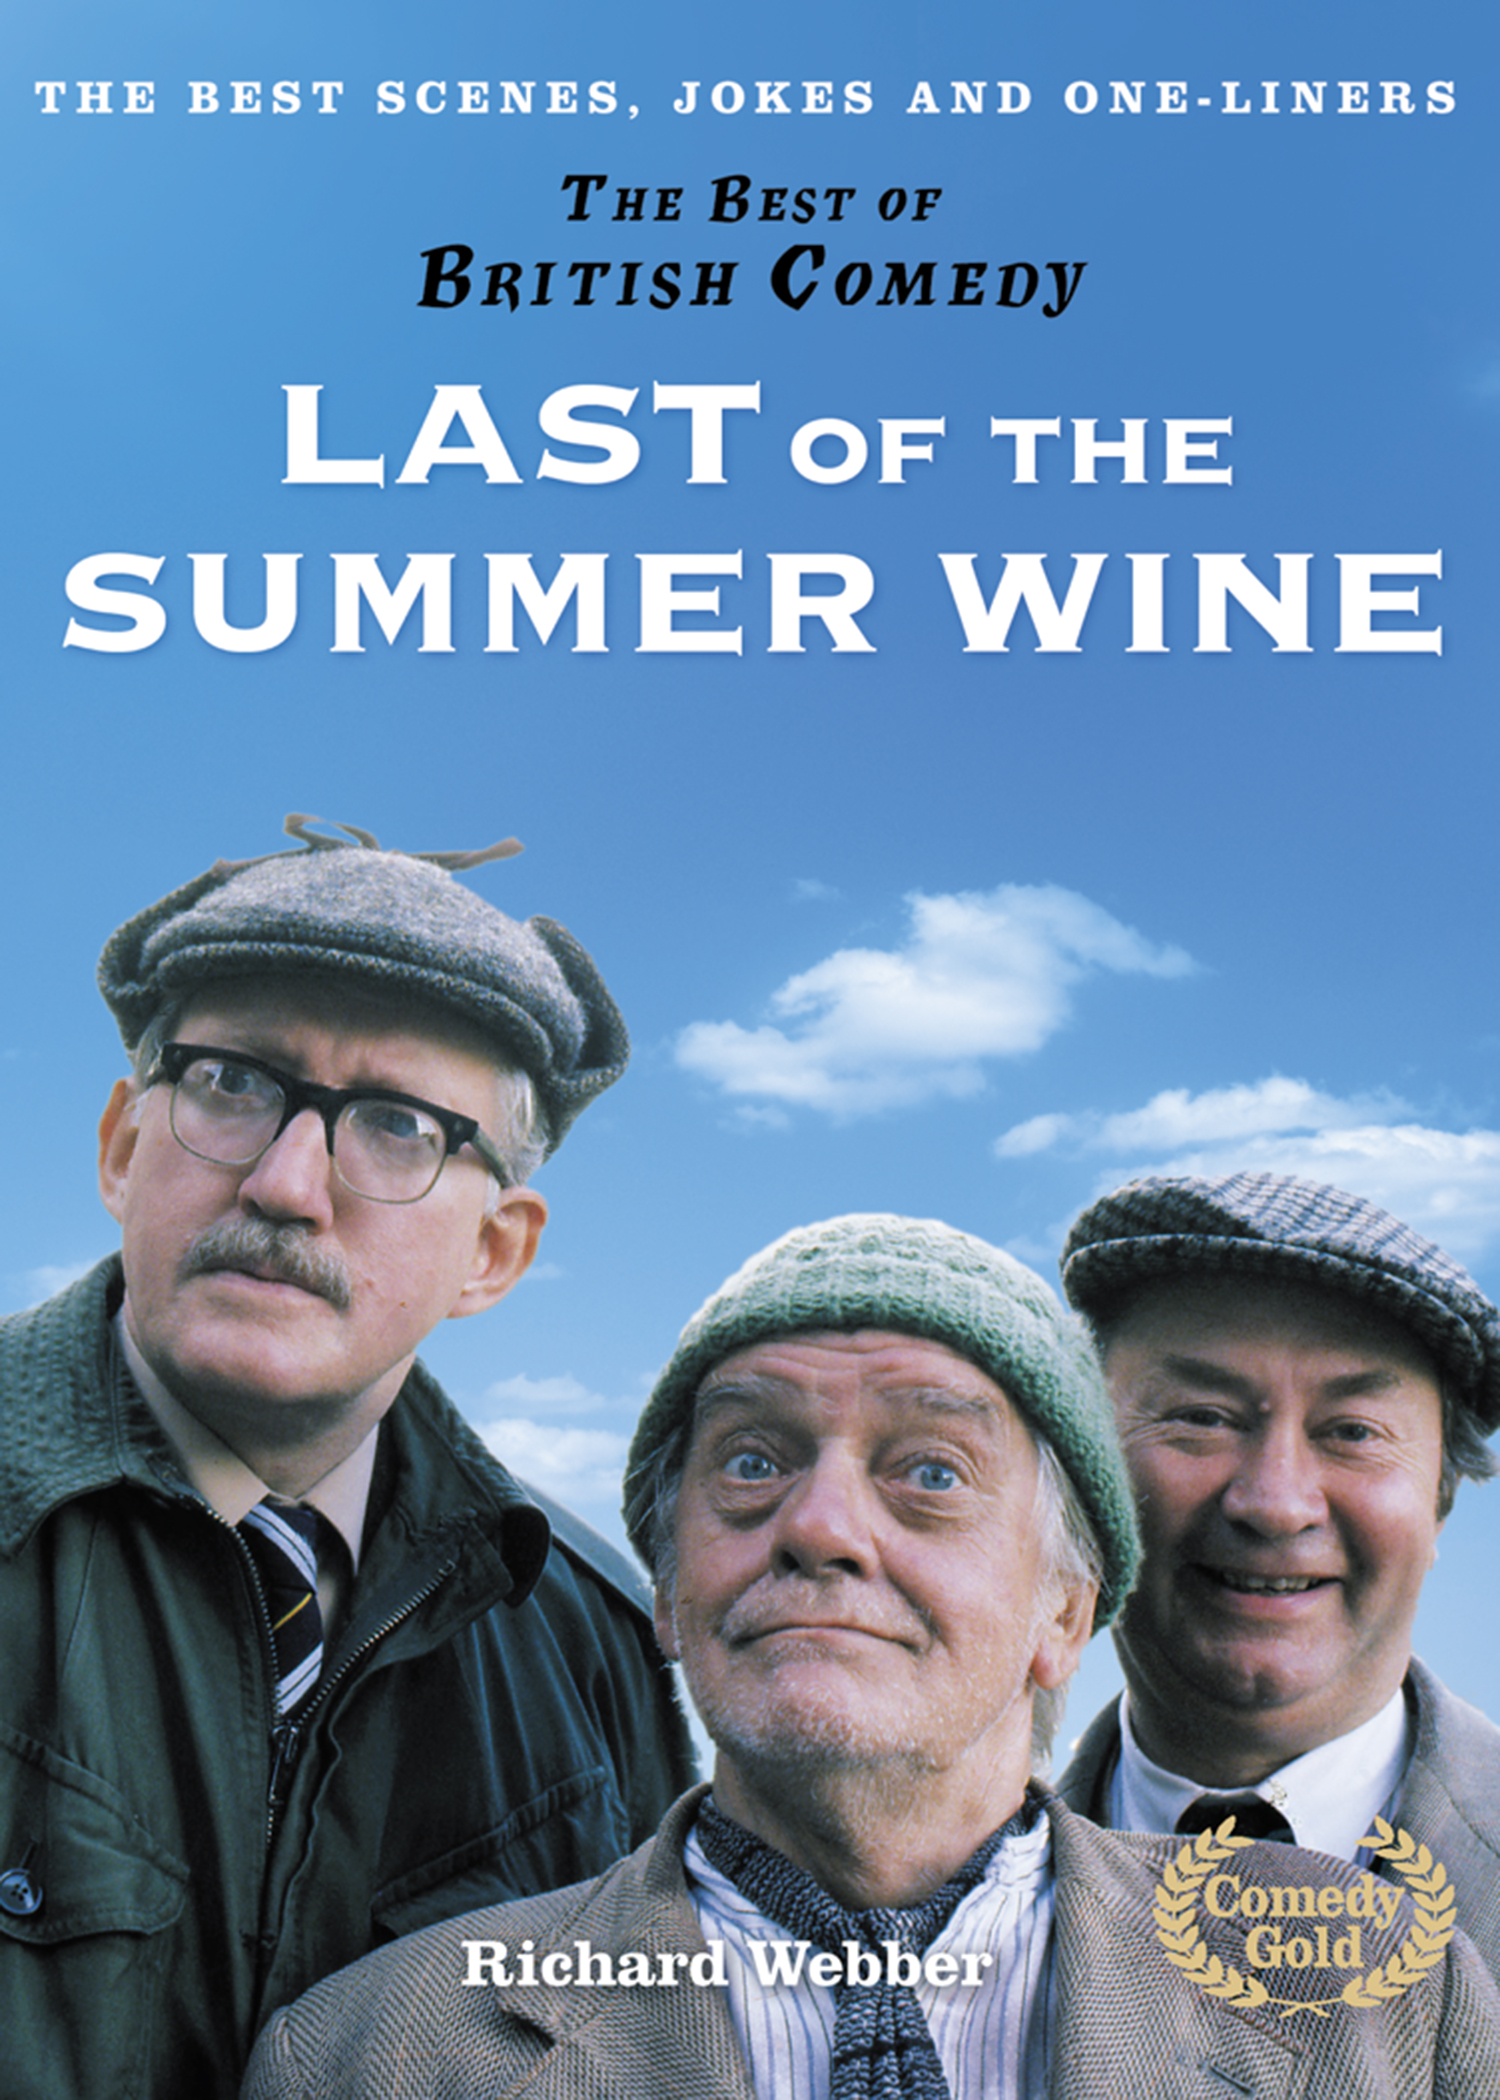 Summer Wine. Best jokes. Завод Summer Wine. Summer jokes